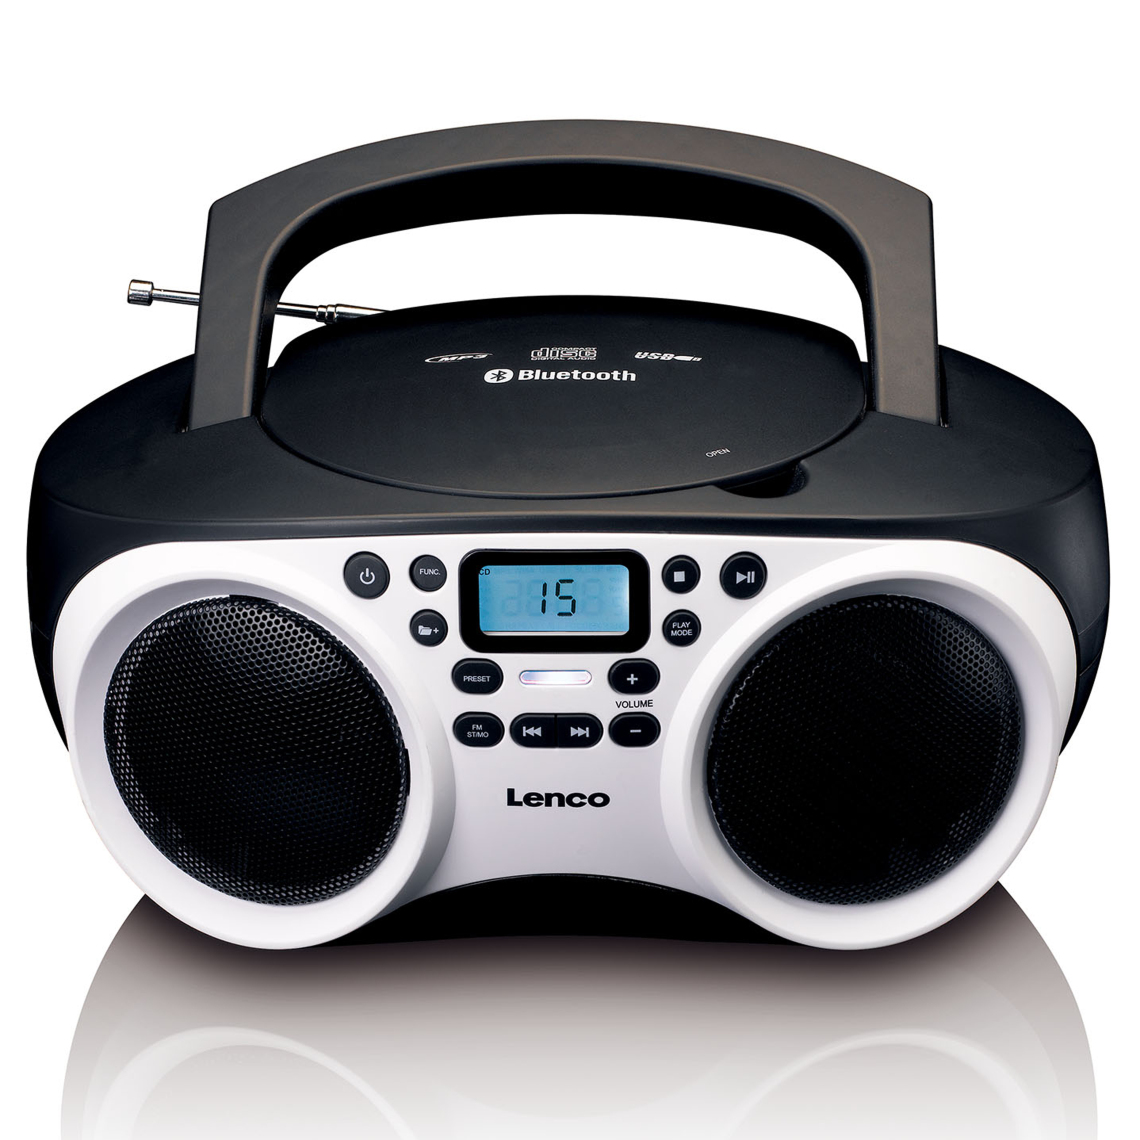 Lenco - Radio portable stéréo avec lecteur CD SCD-501WH Noir-Blanc - Radio